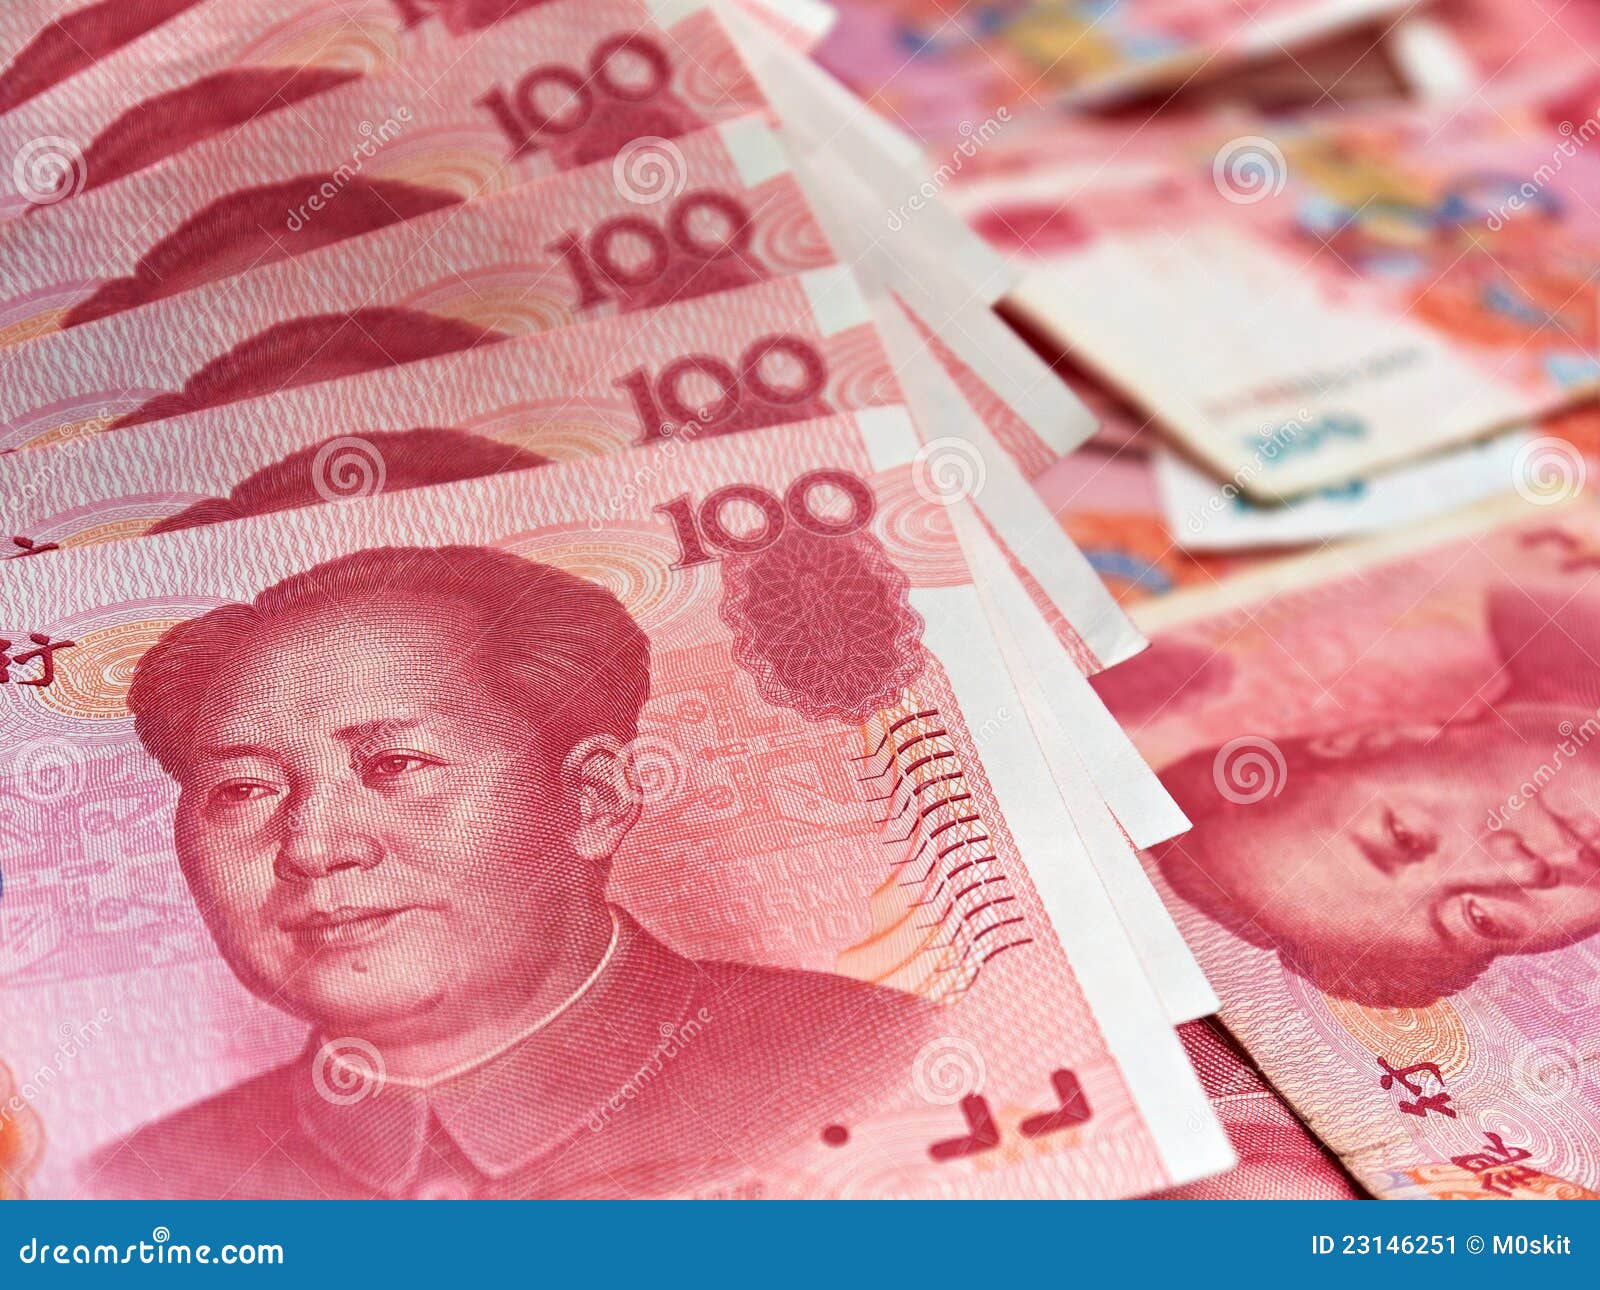 Июань. Китайский юань. Деньги юани. Китайская валюта. Валюта КНР.